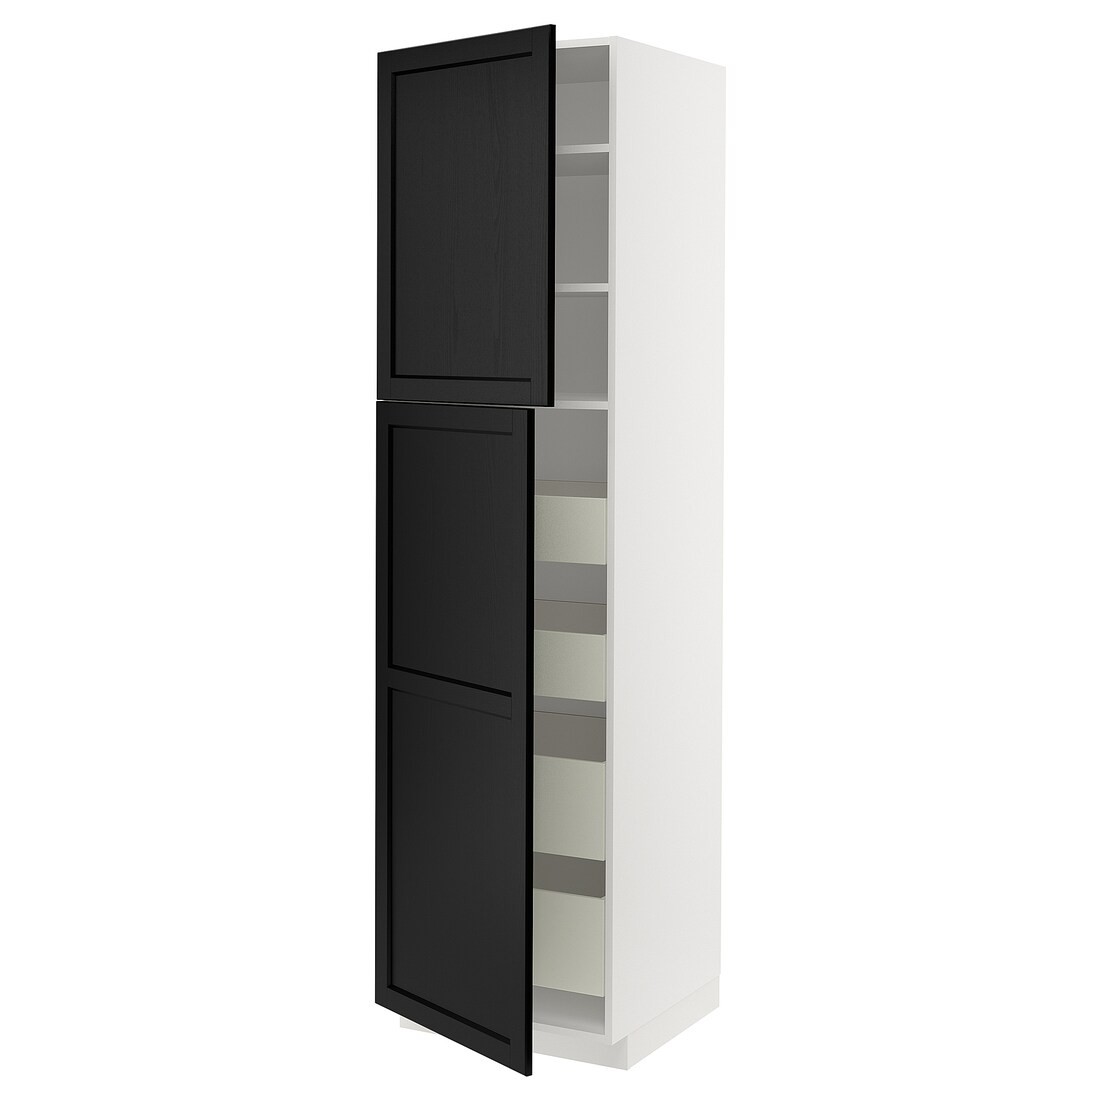 IKEA METOD МЕТОД / MAXIMERA МАКСИМЕРА Шкаф высокий 2 двери / 4 ящика, белый / Lerhyttan черная морилка, 60x60x220 см 19454208 194.542.08